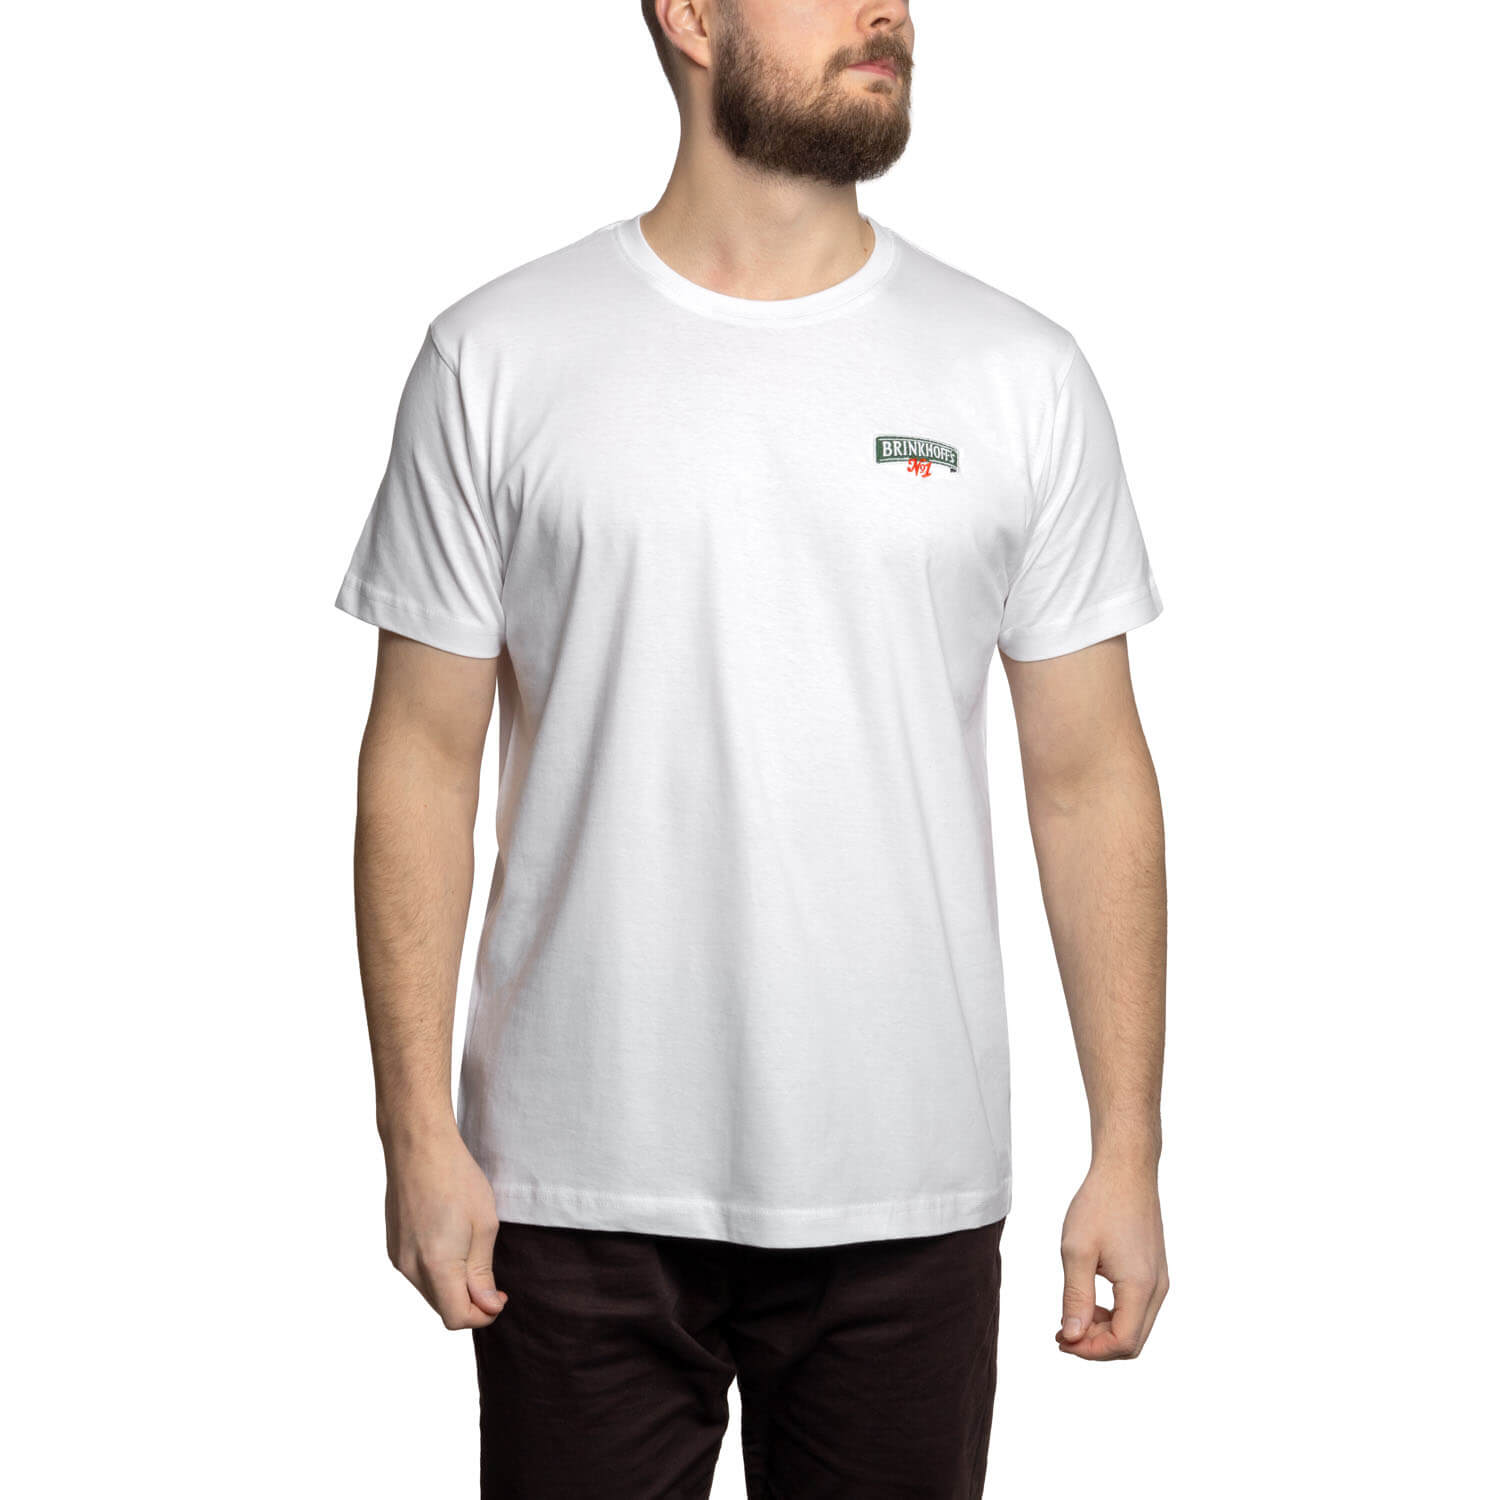 Brinkhoff's T-Shirt Essential weiß